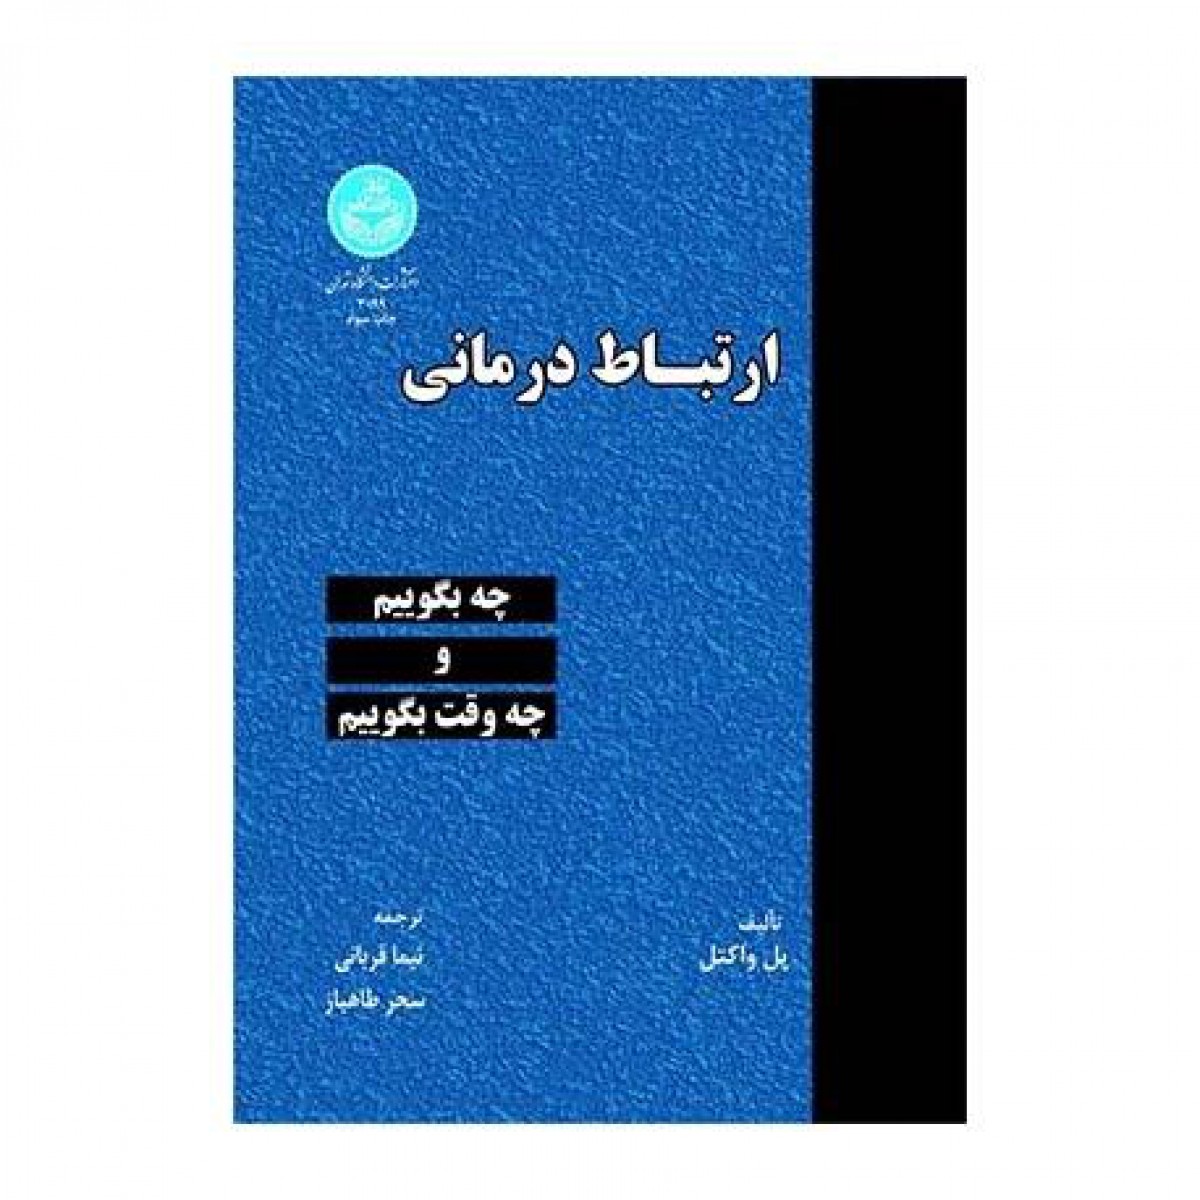 ارتباط درمانی/پل واکتل/نیماقربانی/سحرطاهباز/دانشگاه تهران